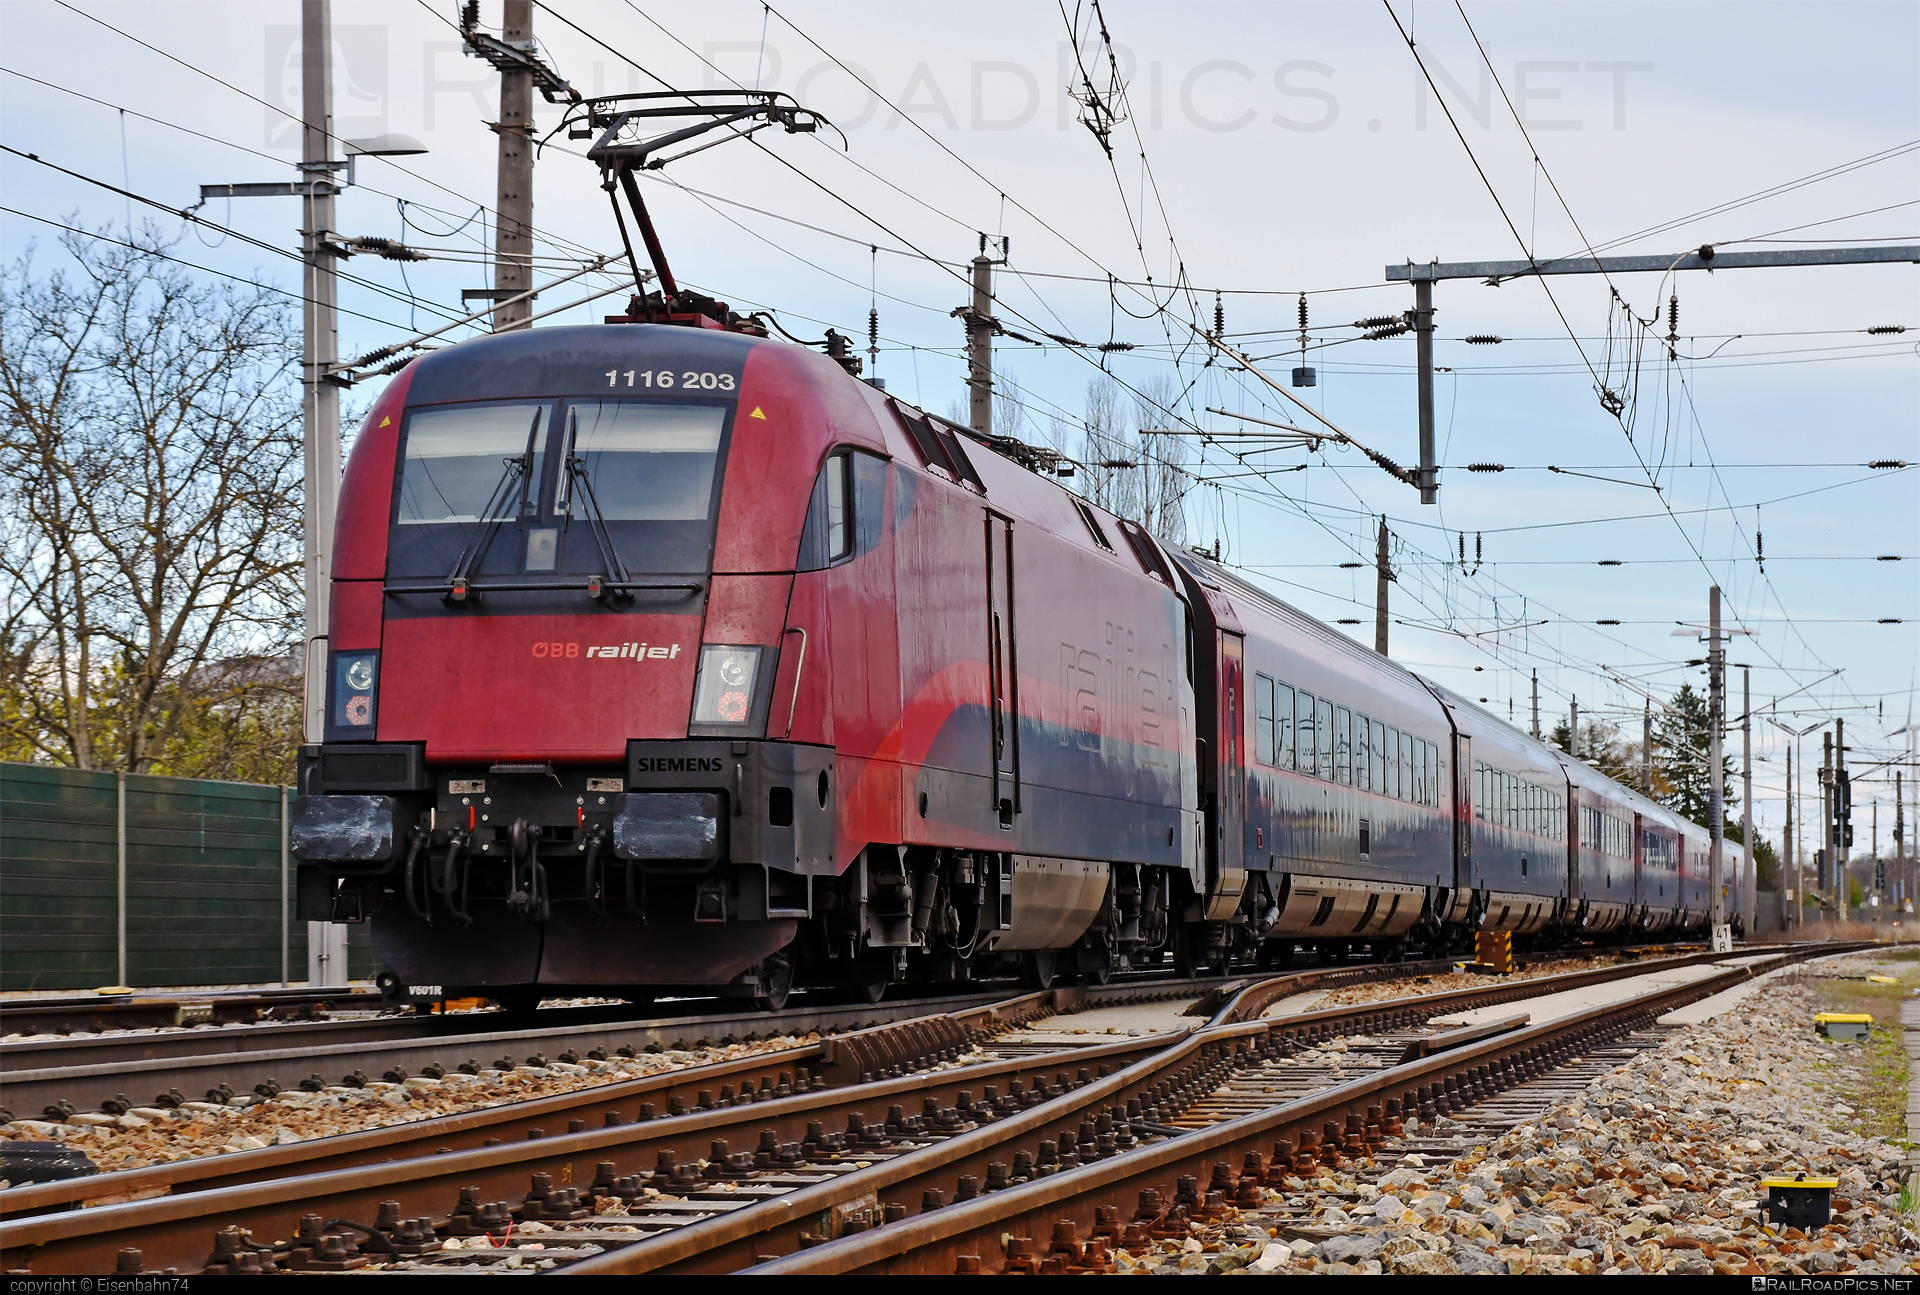 Siemens ES 64 U2 - 1116 203 operated by Österreichische Bundesbahnen #es64 #es64u2 #eurosprinter #obb #obbrailjet #osterreichischebundesbahnen #railjet #siemens #siemensEs64 #siemensEs64u2 #siemenstaurus #taurus #tauruslocomotive